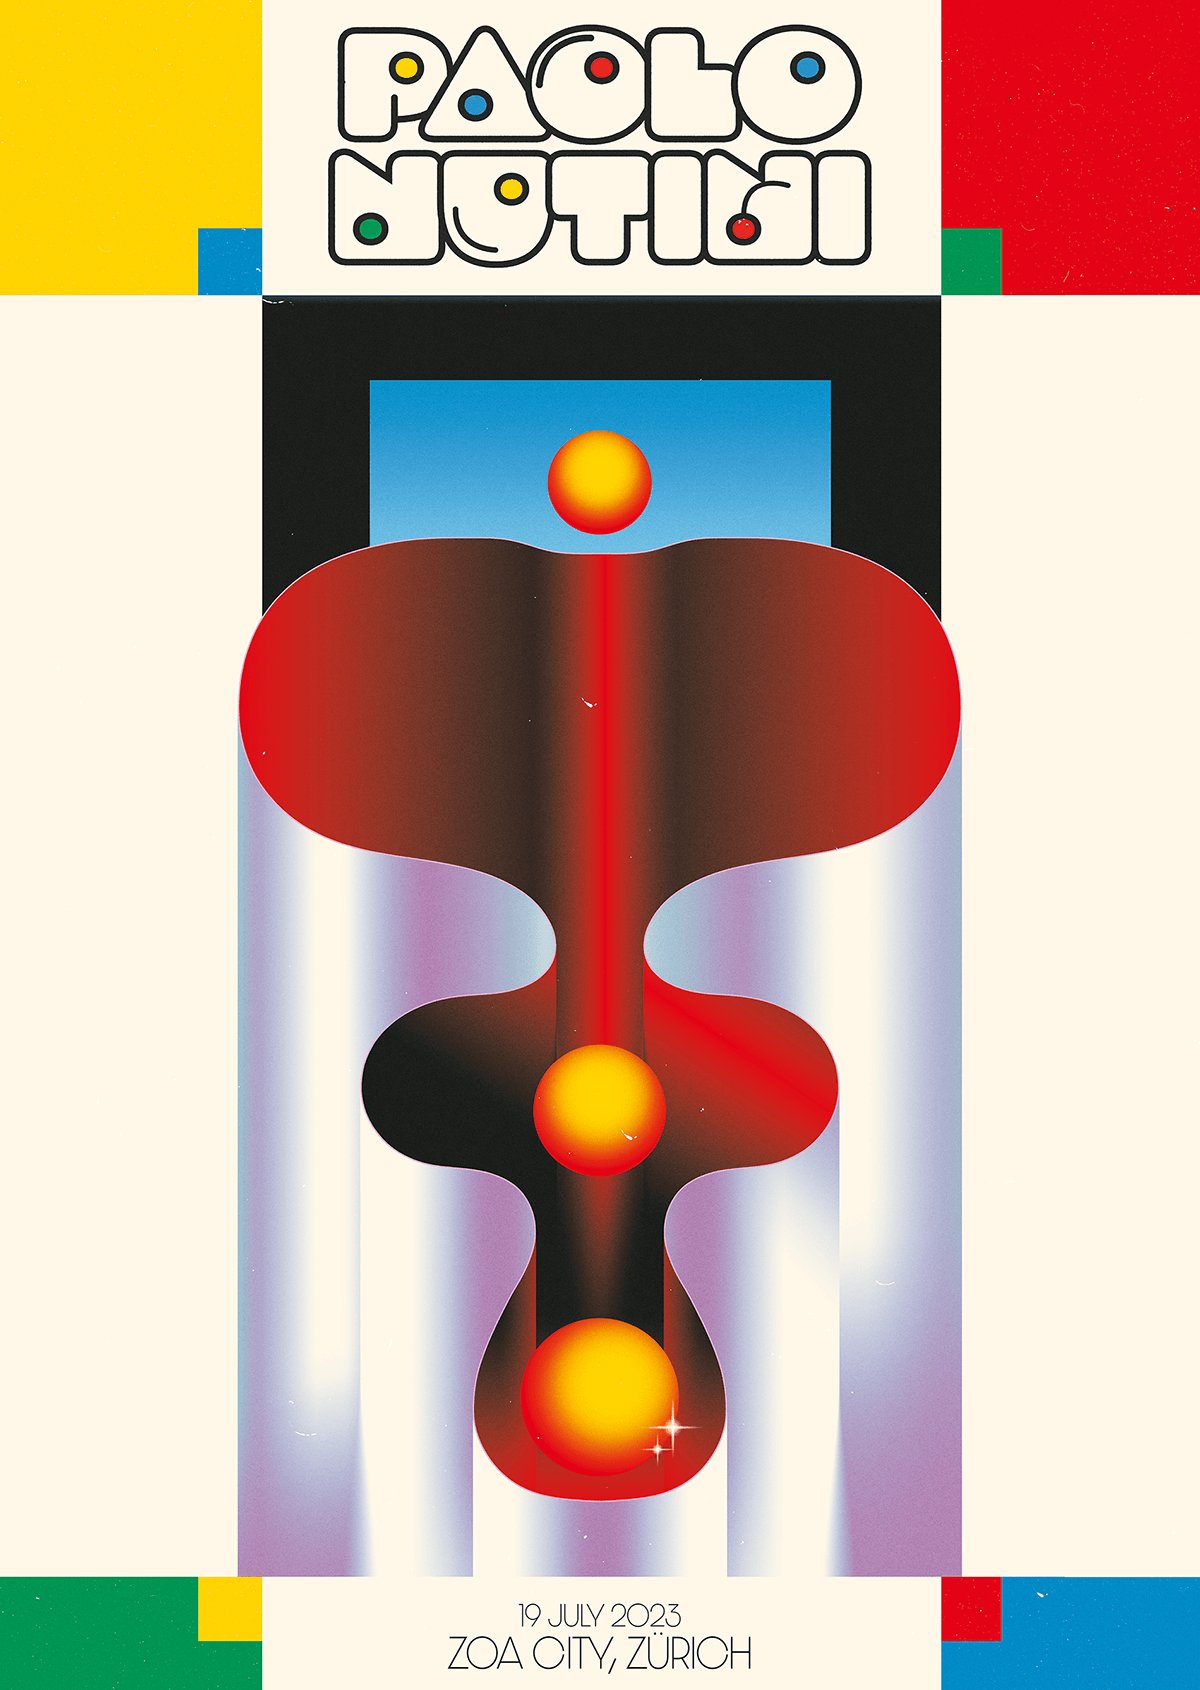 gig poster digital illustration surrealism Poster Design typography design music art Concert art